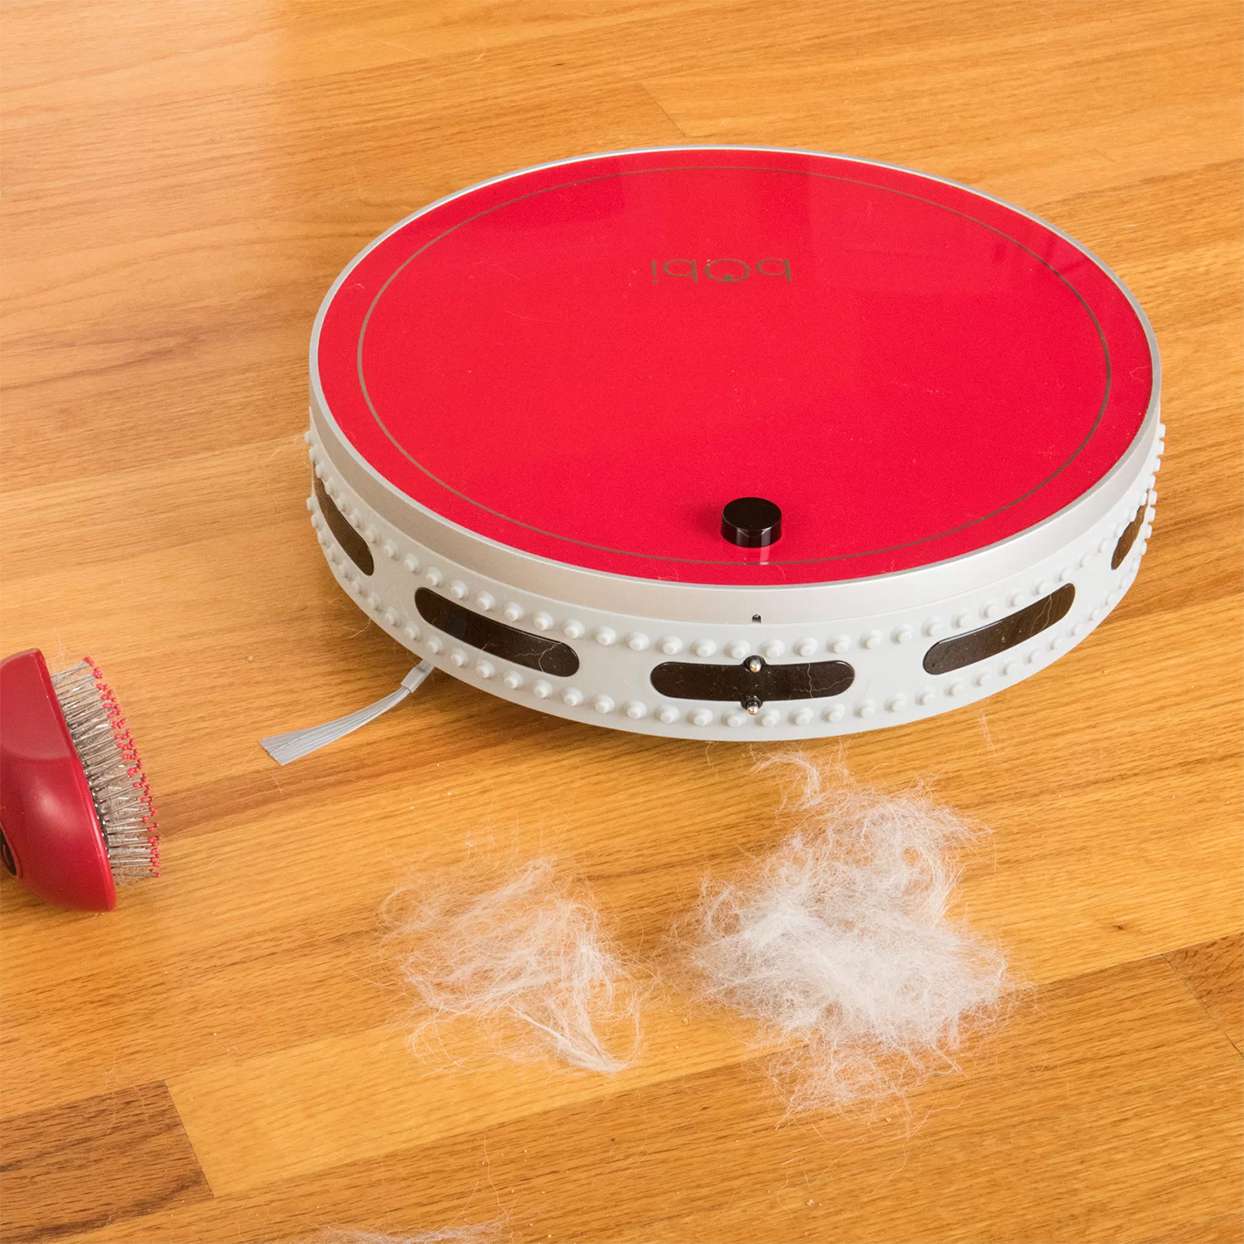 red robot vacuum on wood floor